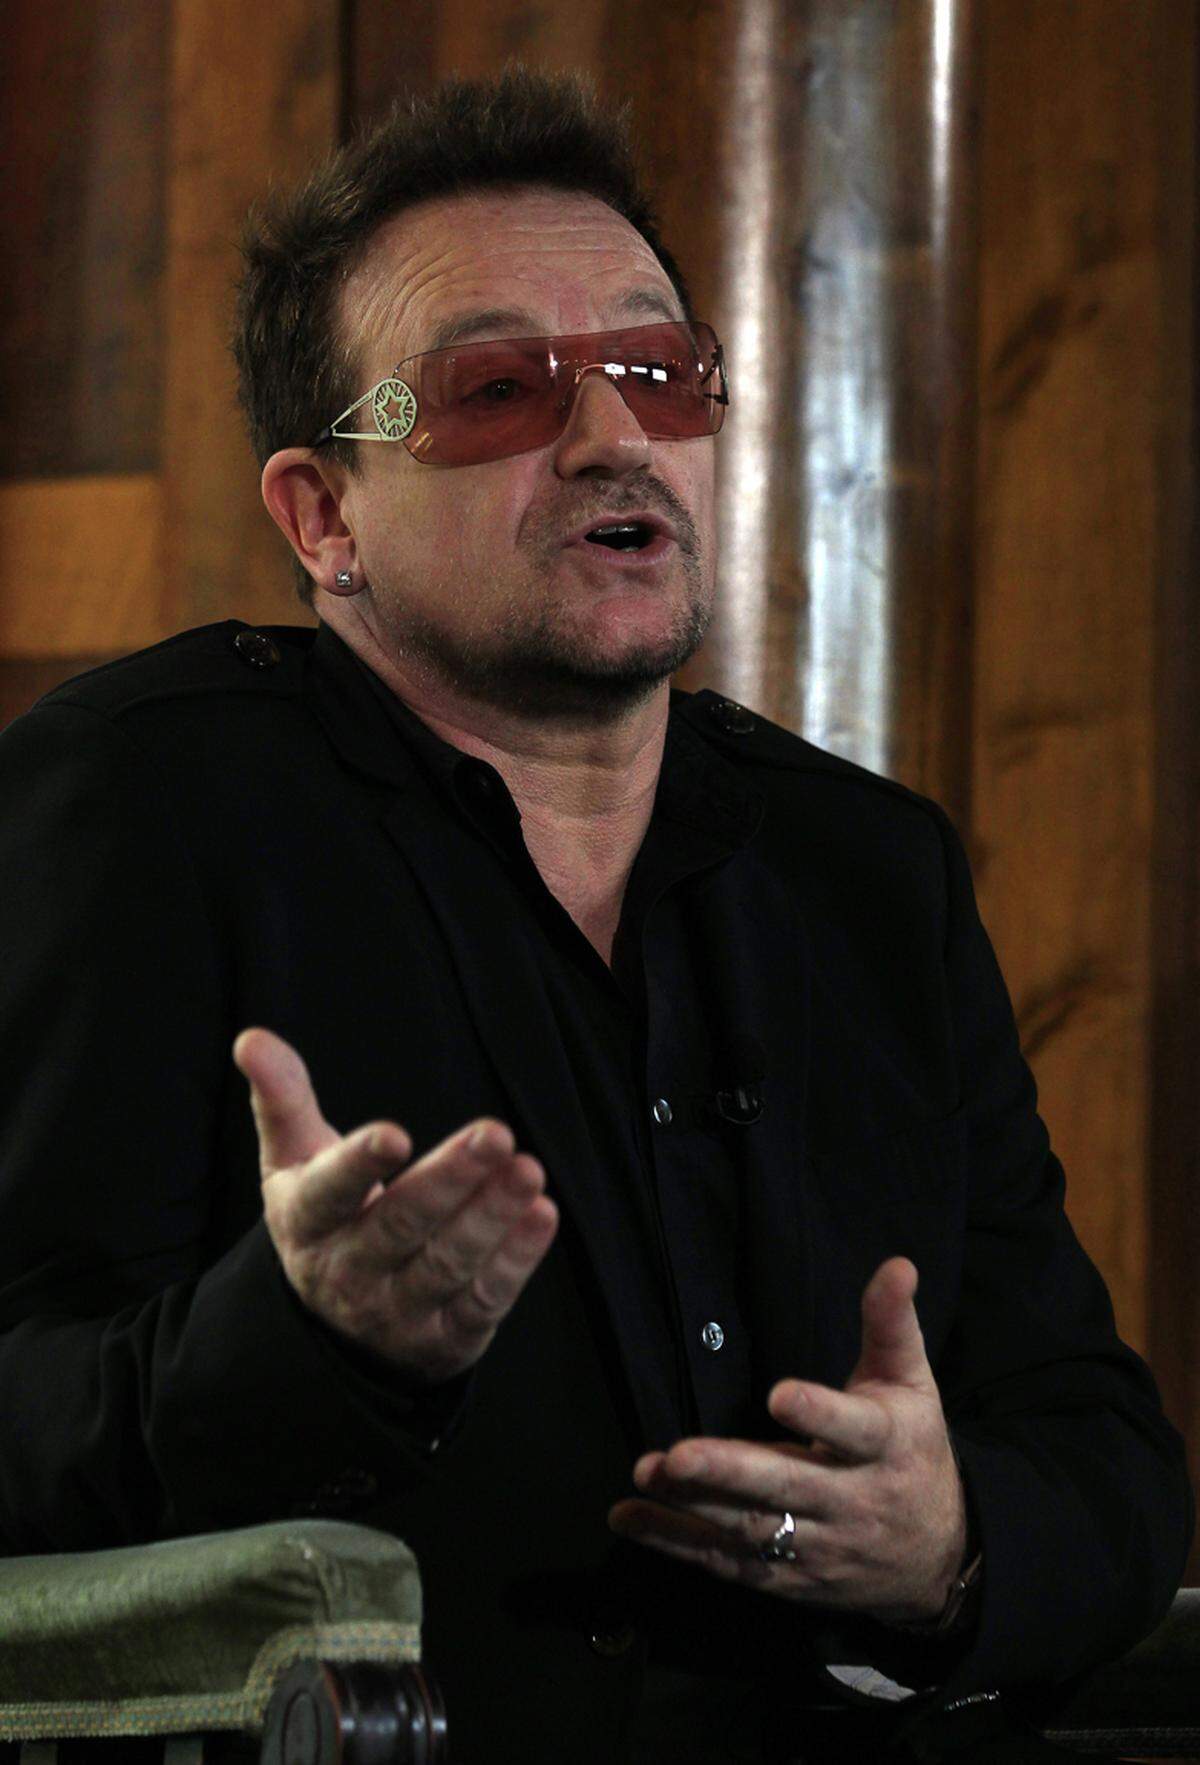 Ob Bono seine Tochter Memphis Eve nach der Stadt Memphis oder doch der Zigaretten-Marke benannt hat, ist nicht klar.